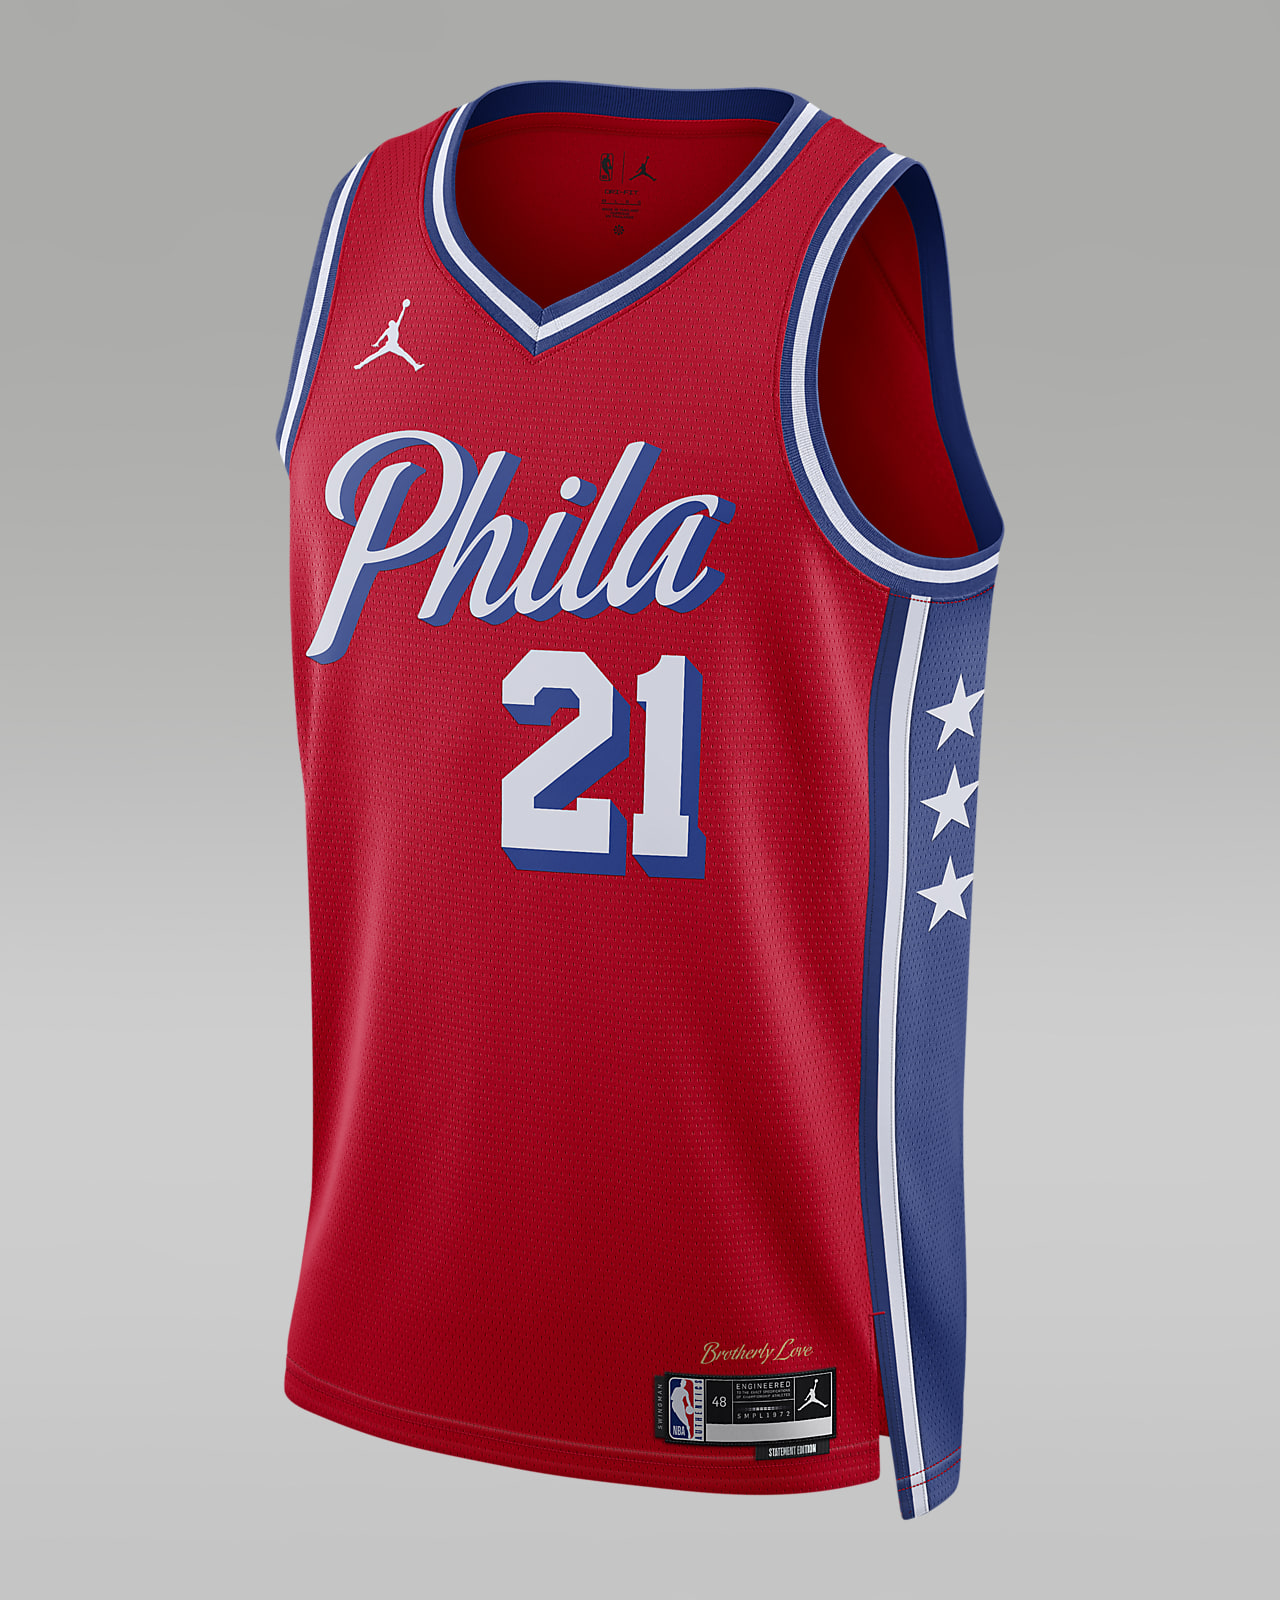 uniforme philadelphia 76ers